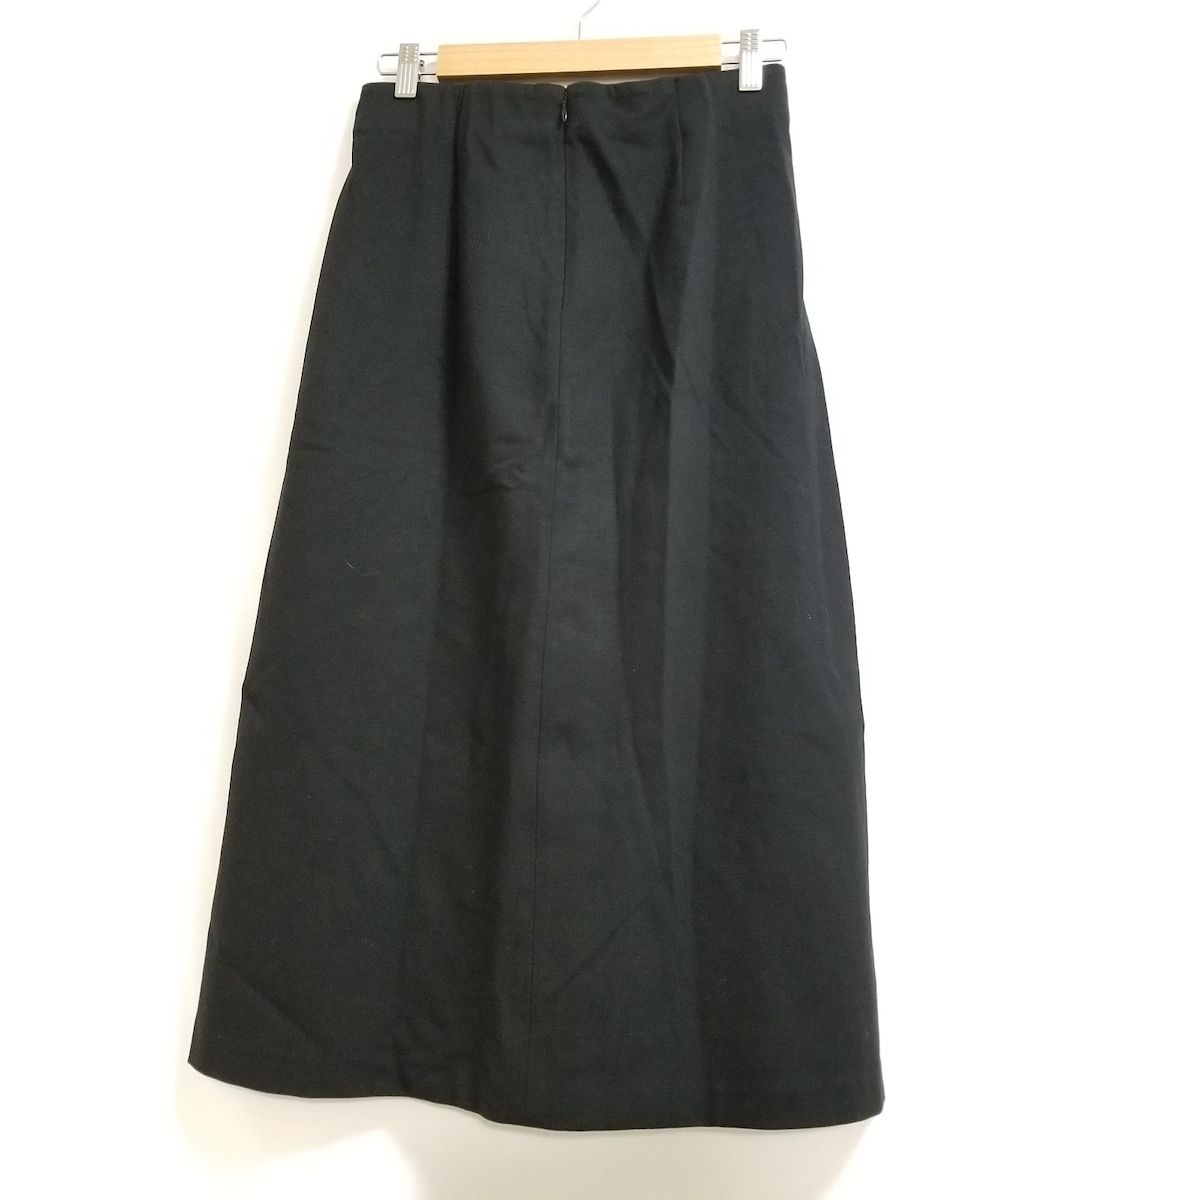 CYCLAS(シクラス) ロングスカート サイズ34 S レディース美品 - 黒